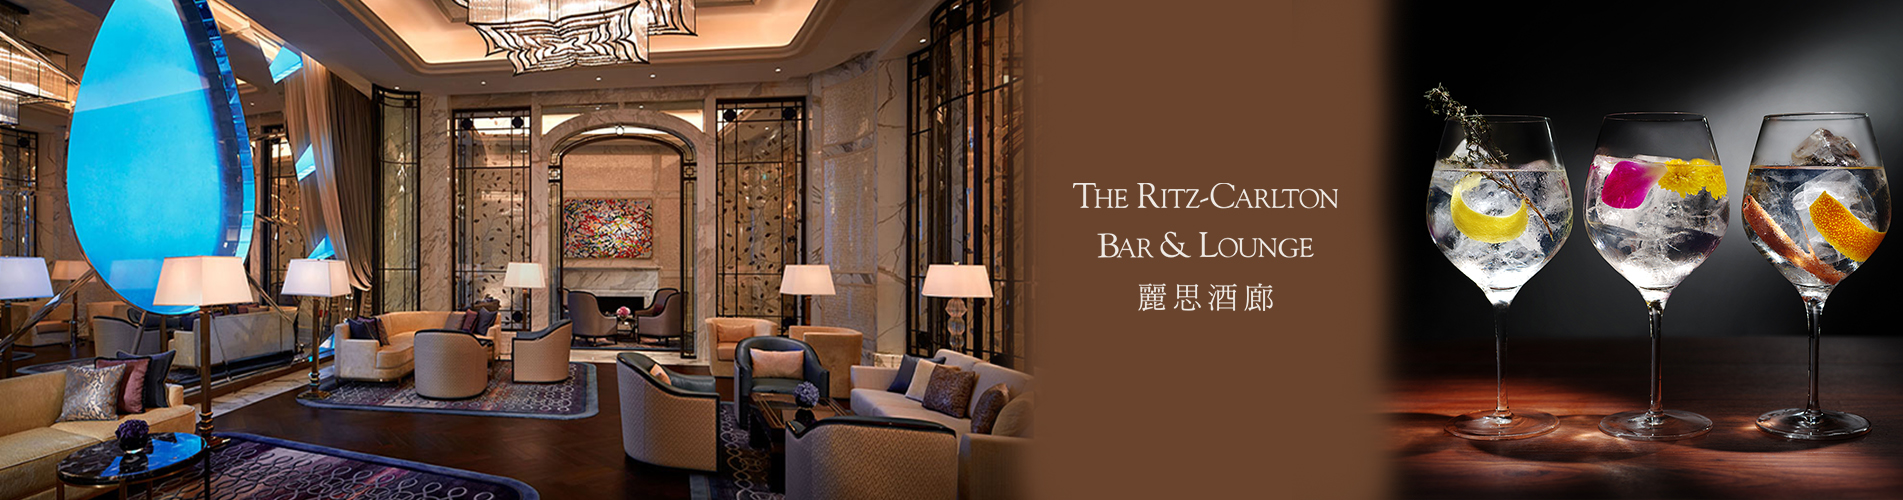 澳門麗思酒廊 下午茶套餐 THE RITZ-CARLTON BAR ＆ LOUNGE